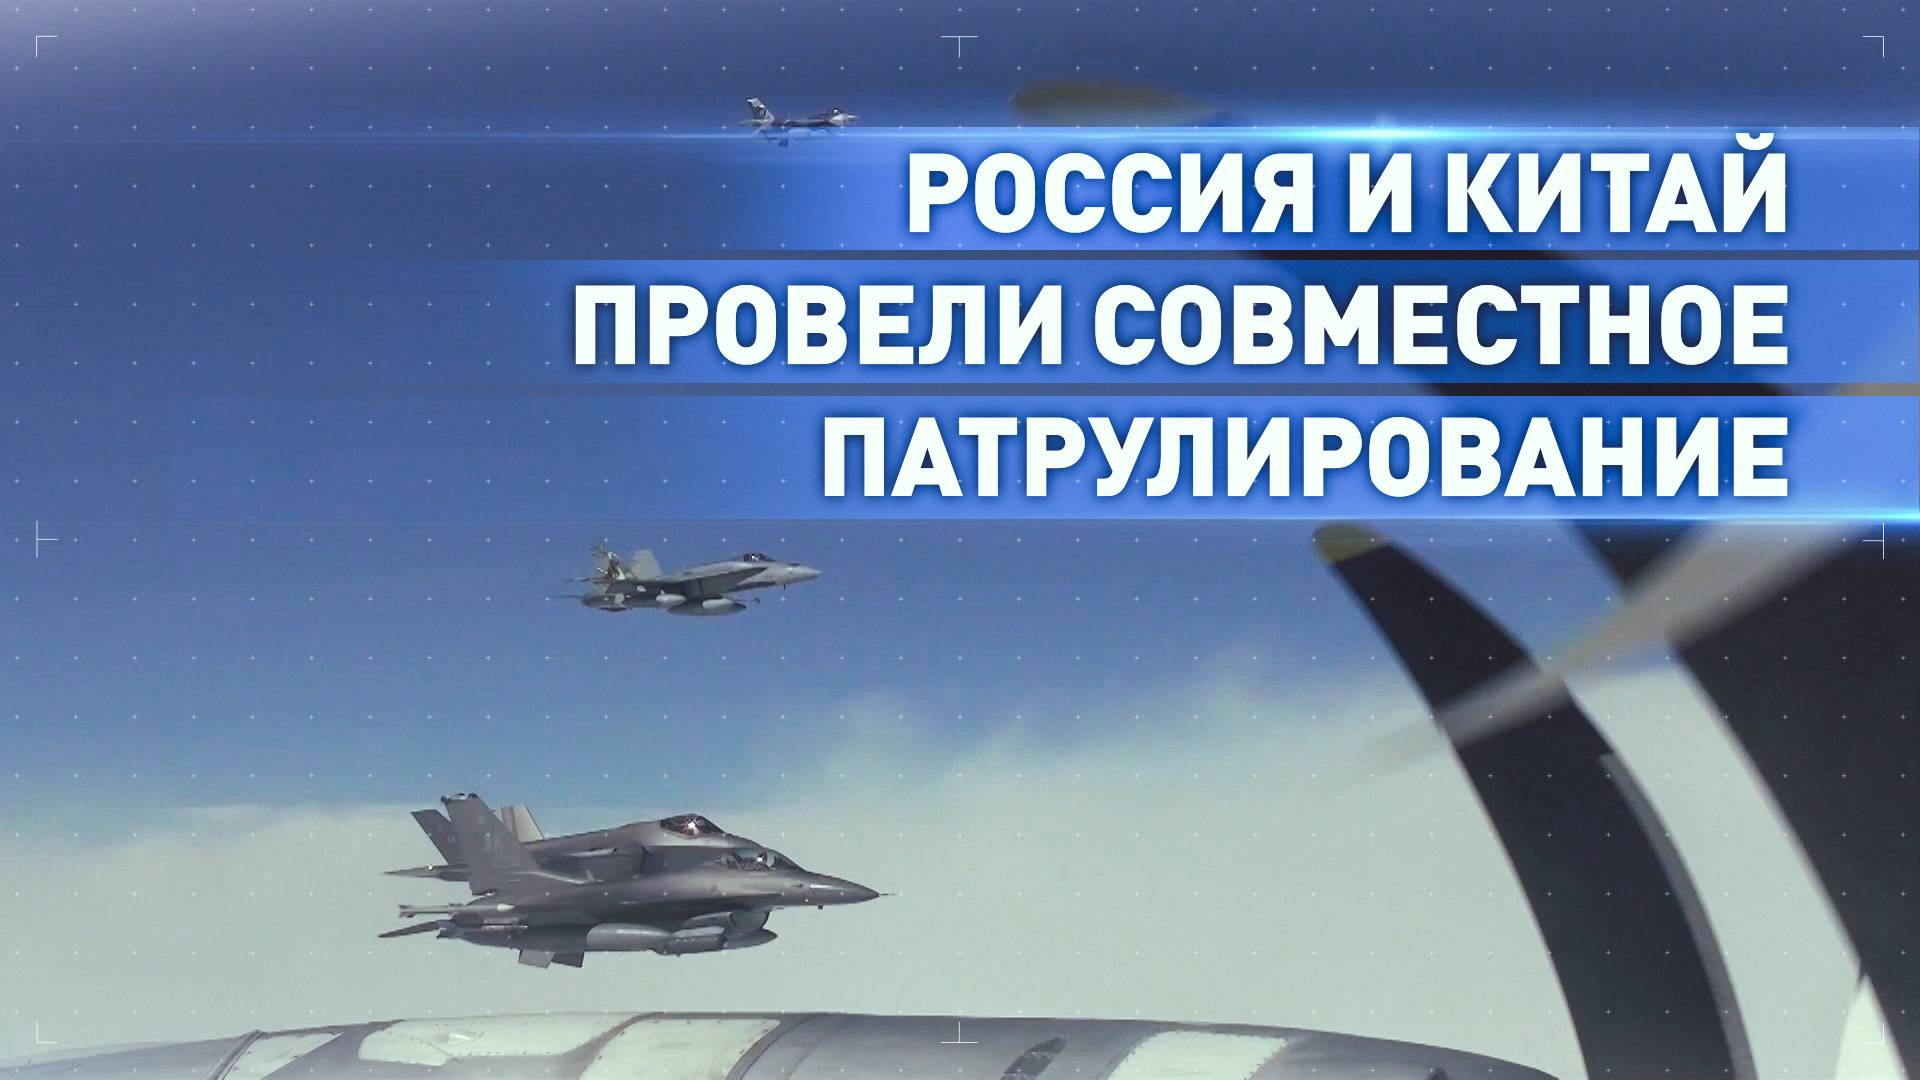 Российские Ту-95МС и китайские стратегические бомбардировщики провели совместное патрулирование